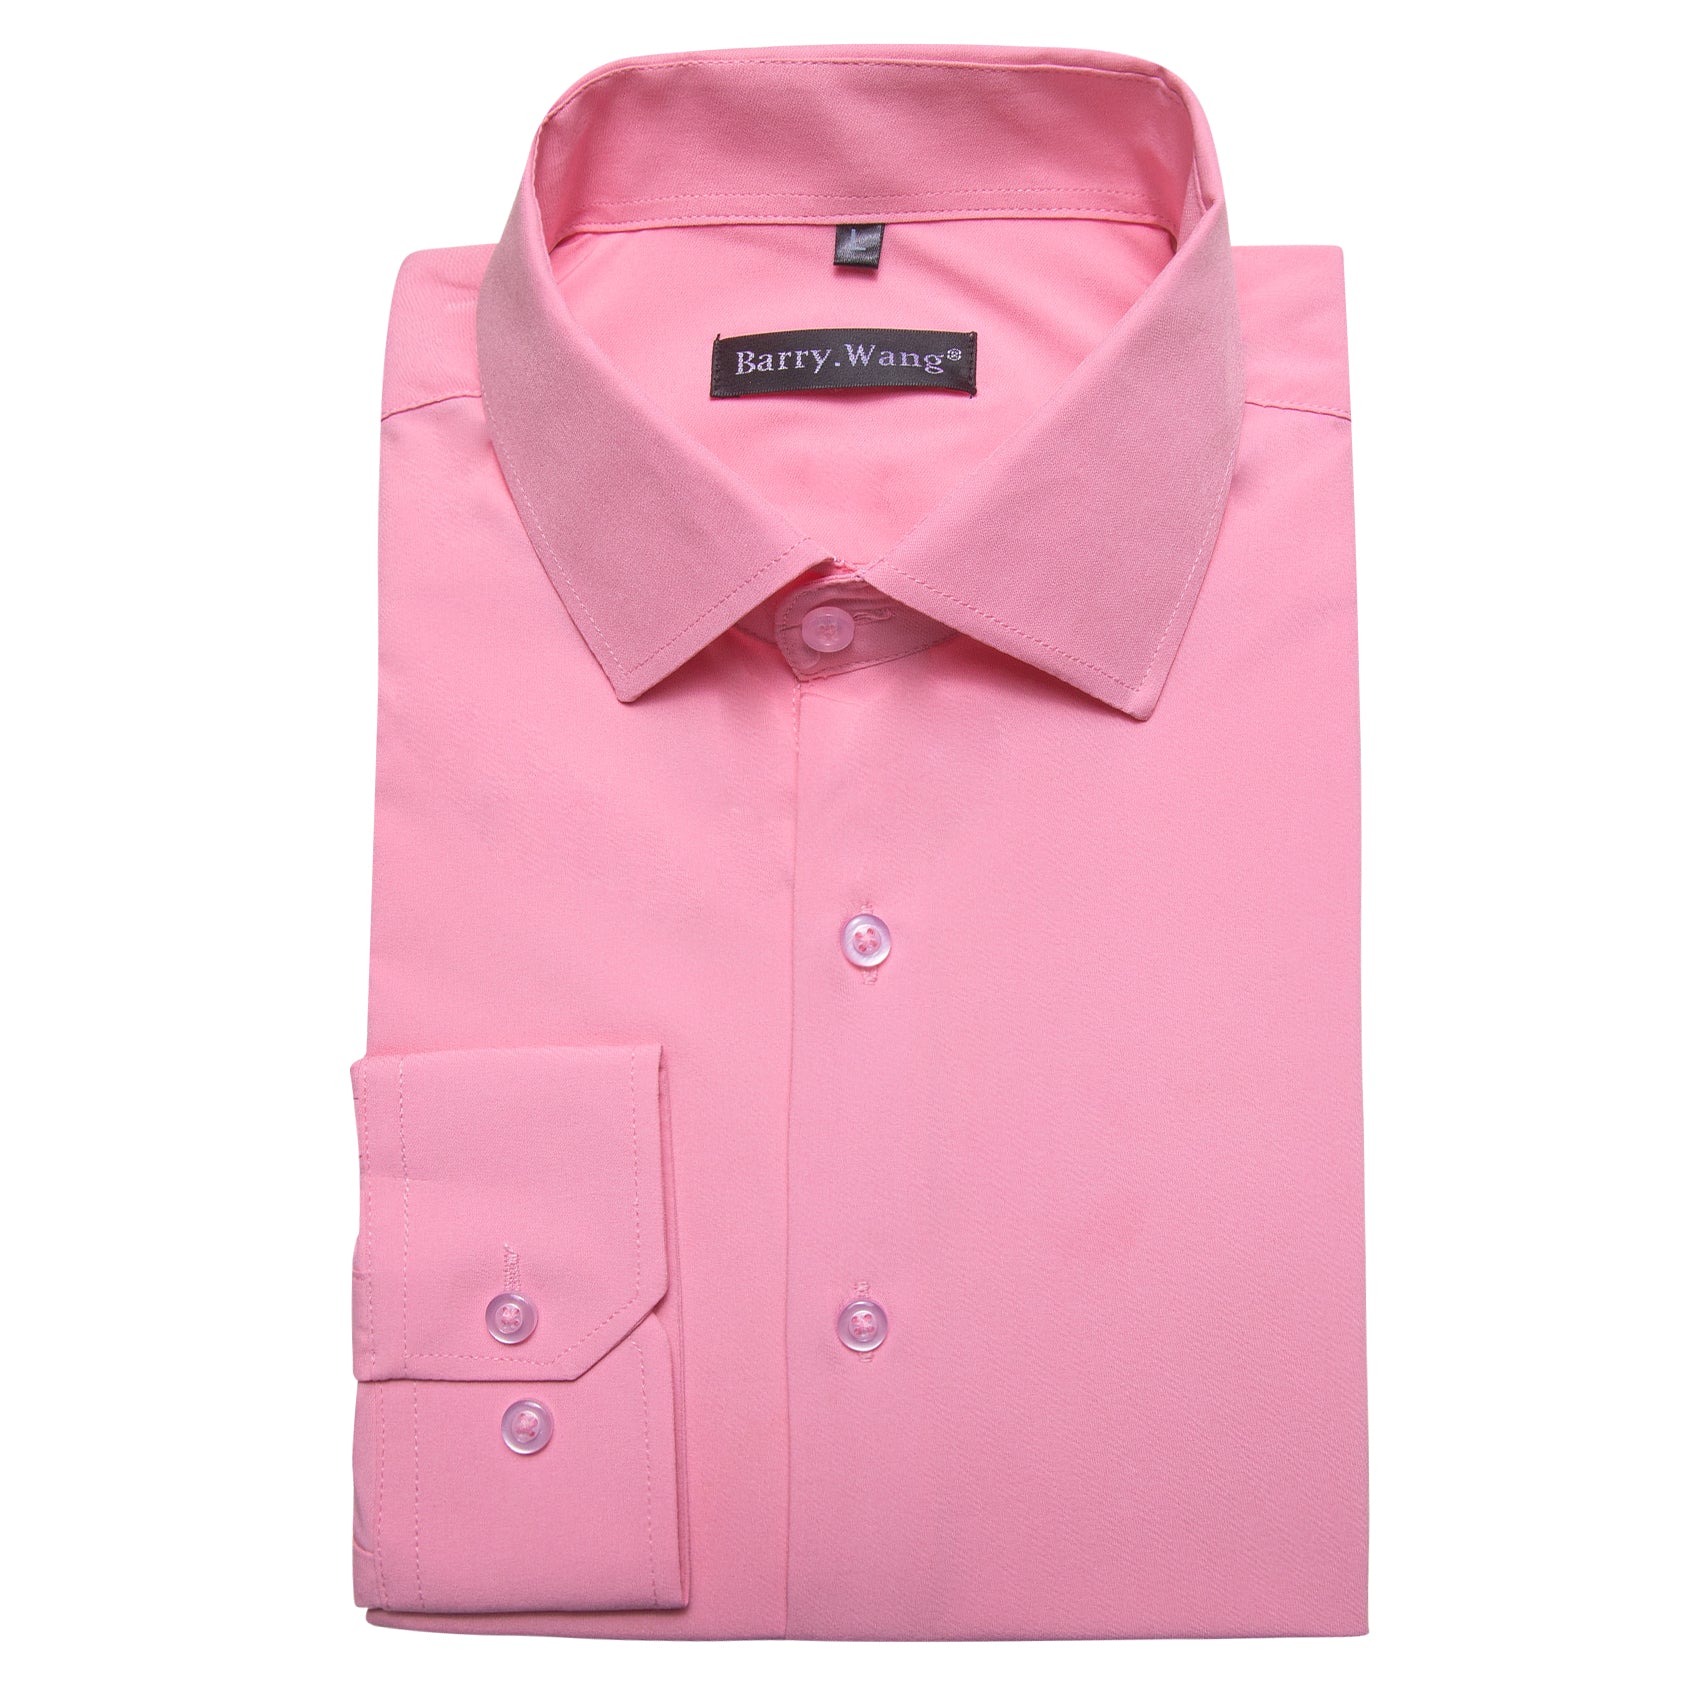 Barry.wang Button Down Shirt Light Pink Solid Silk Men's Long Sleeve Shirt